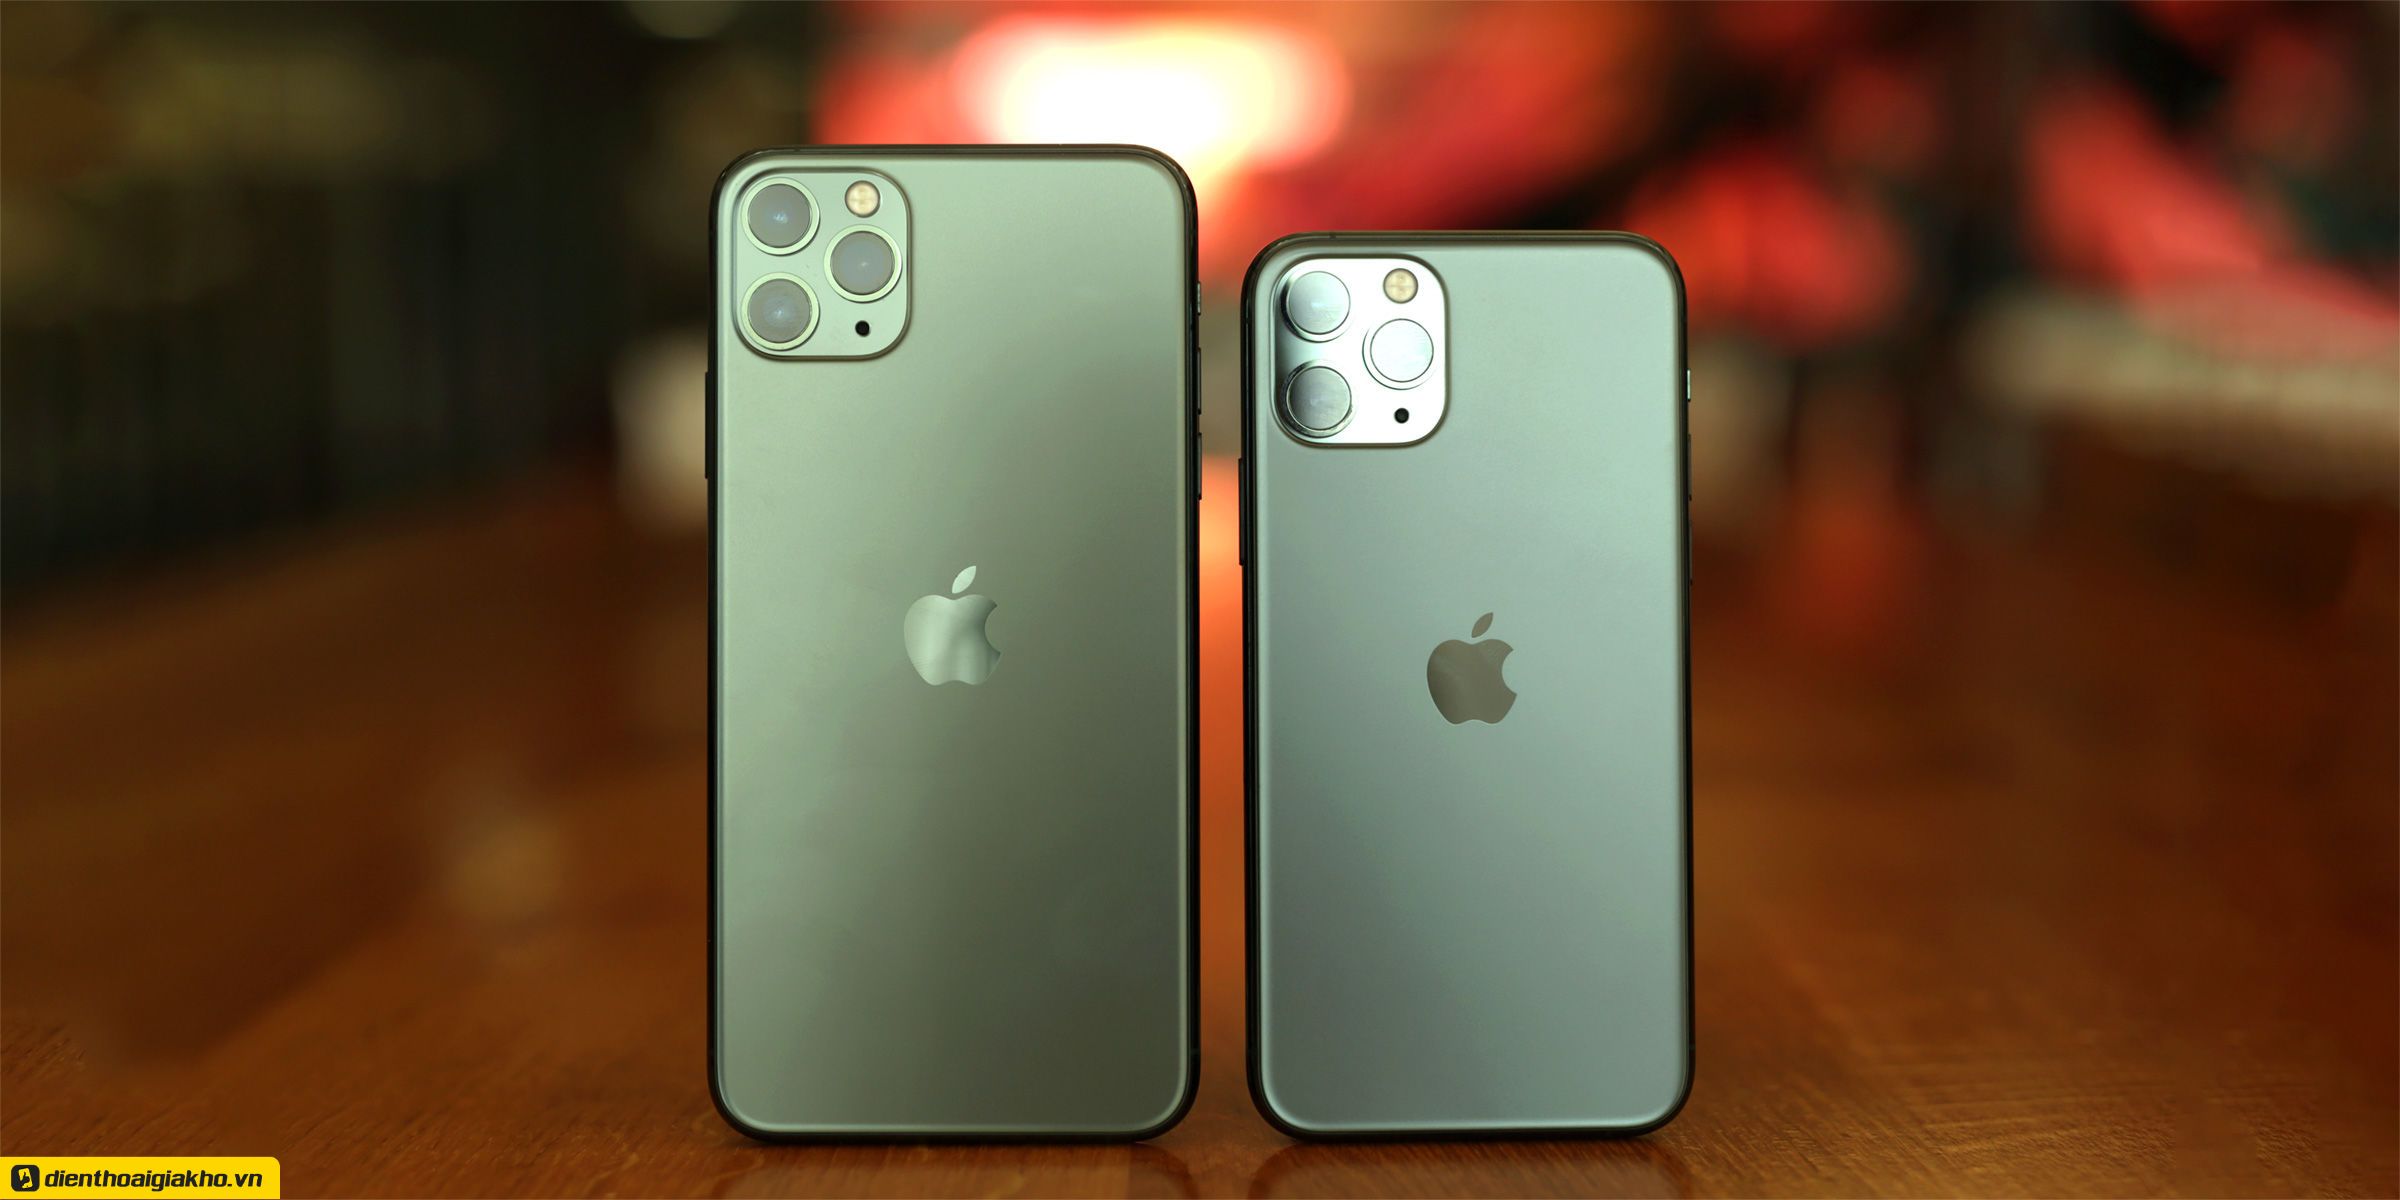 iPhone 11 Pro Max Midnight (bên trái) sở hữu màn hình rộng hơn và nặng hơn so với “người anh” tiền nhiệm